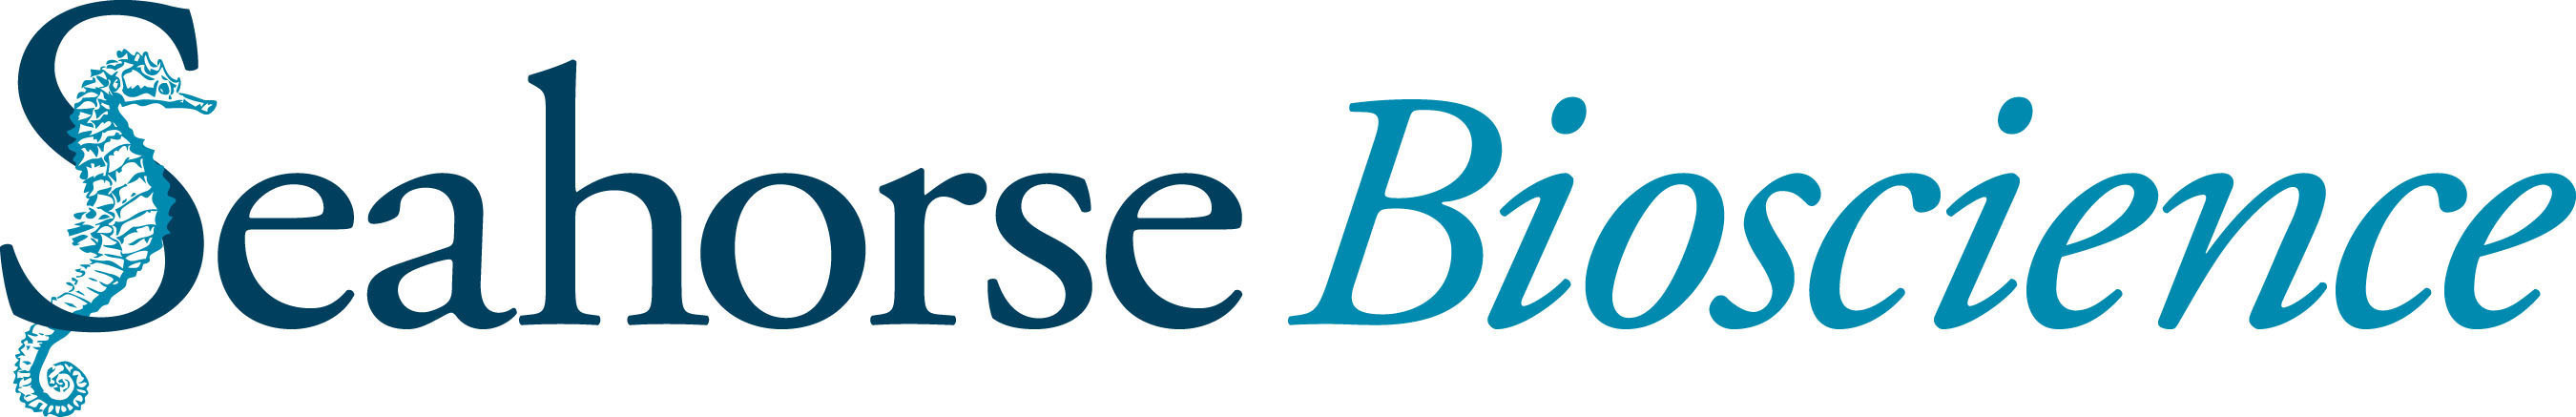 Seahorse Bioscience Logo